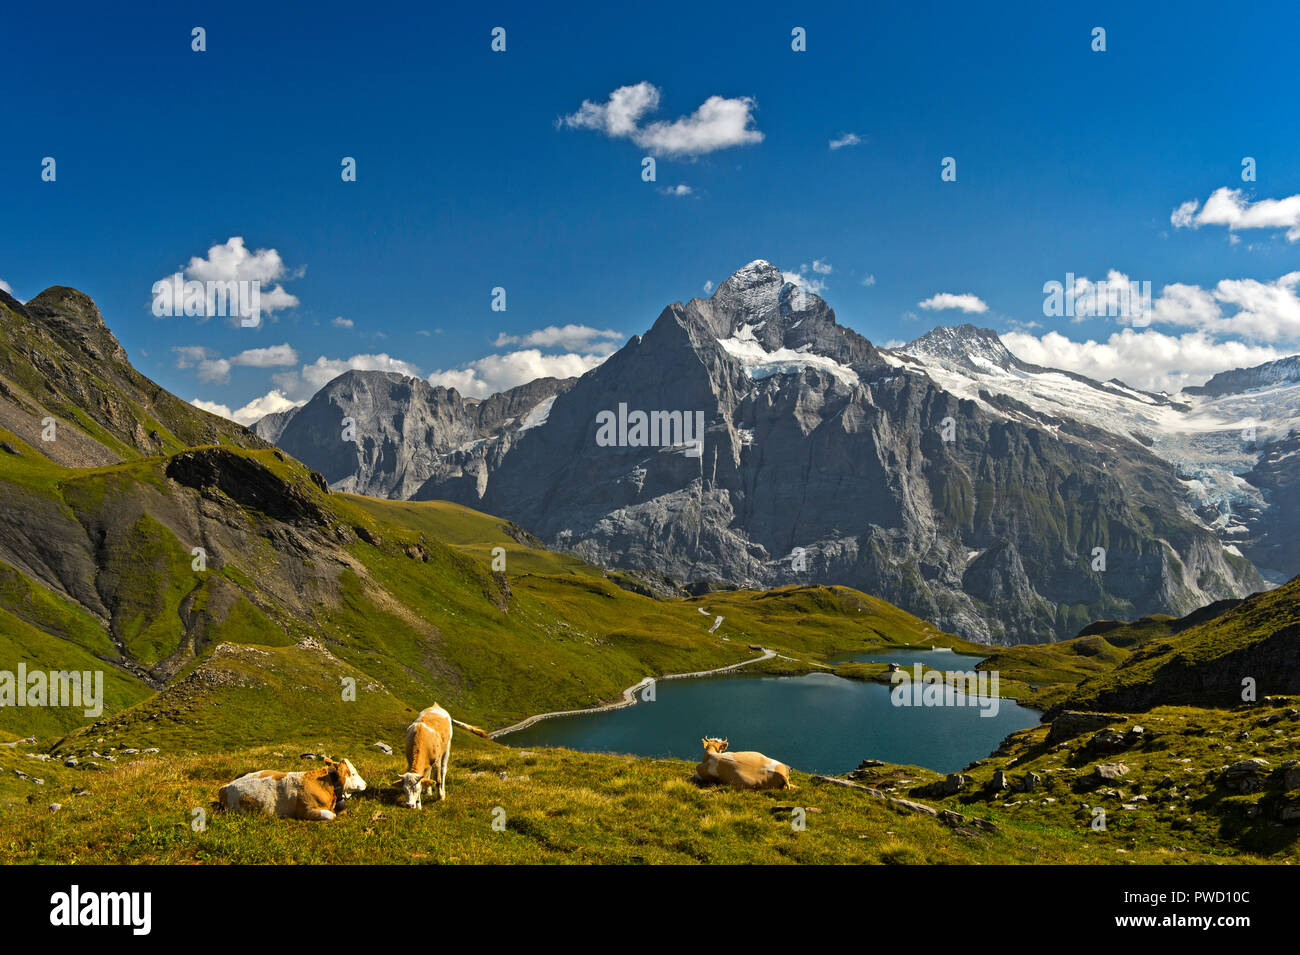 Lac de montagne et le pic de Bachalp Wetterhorn derrière, Grindelwald, Oberland Bernois, Suisse Banque D'Images